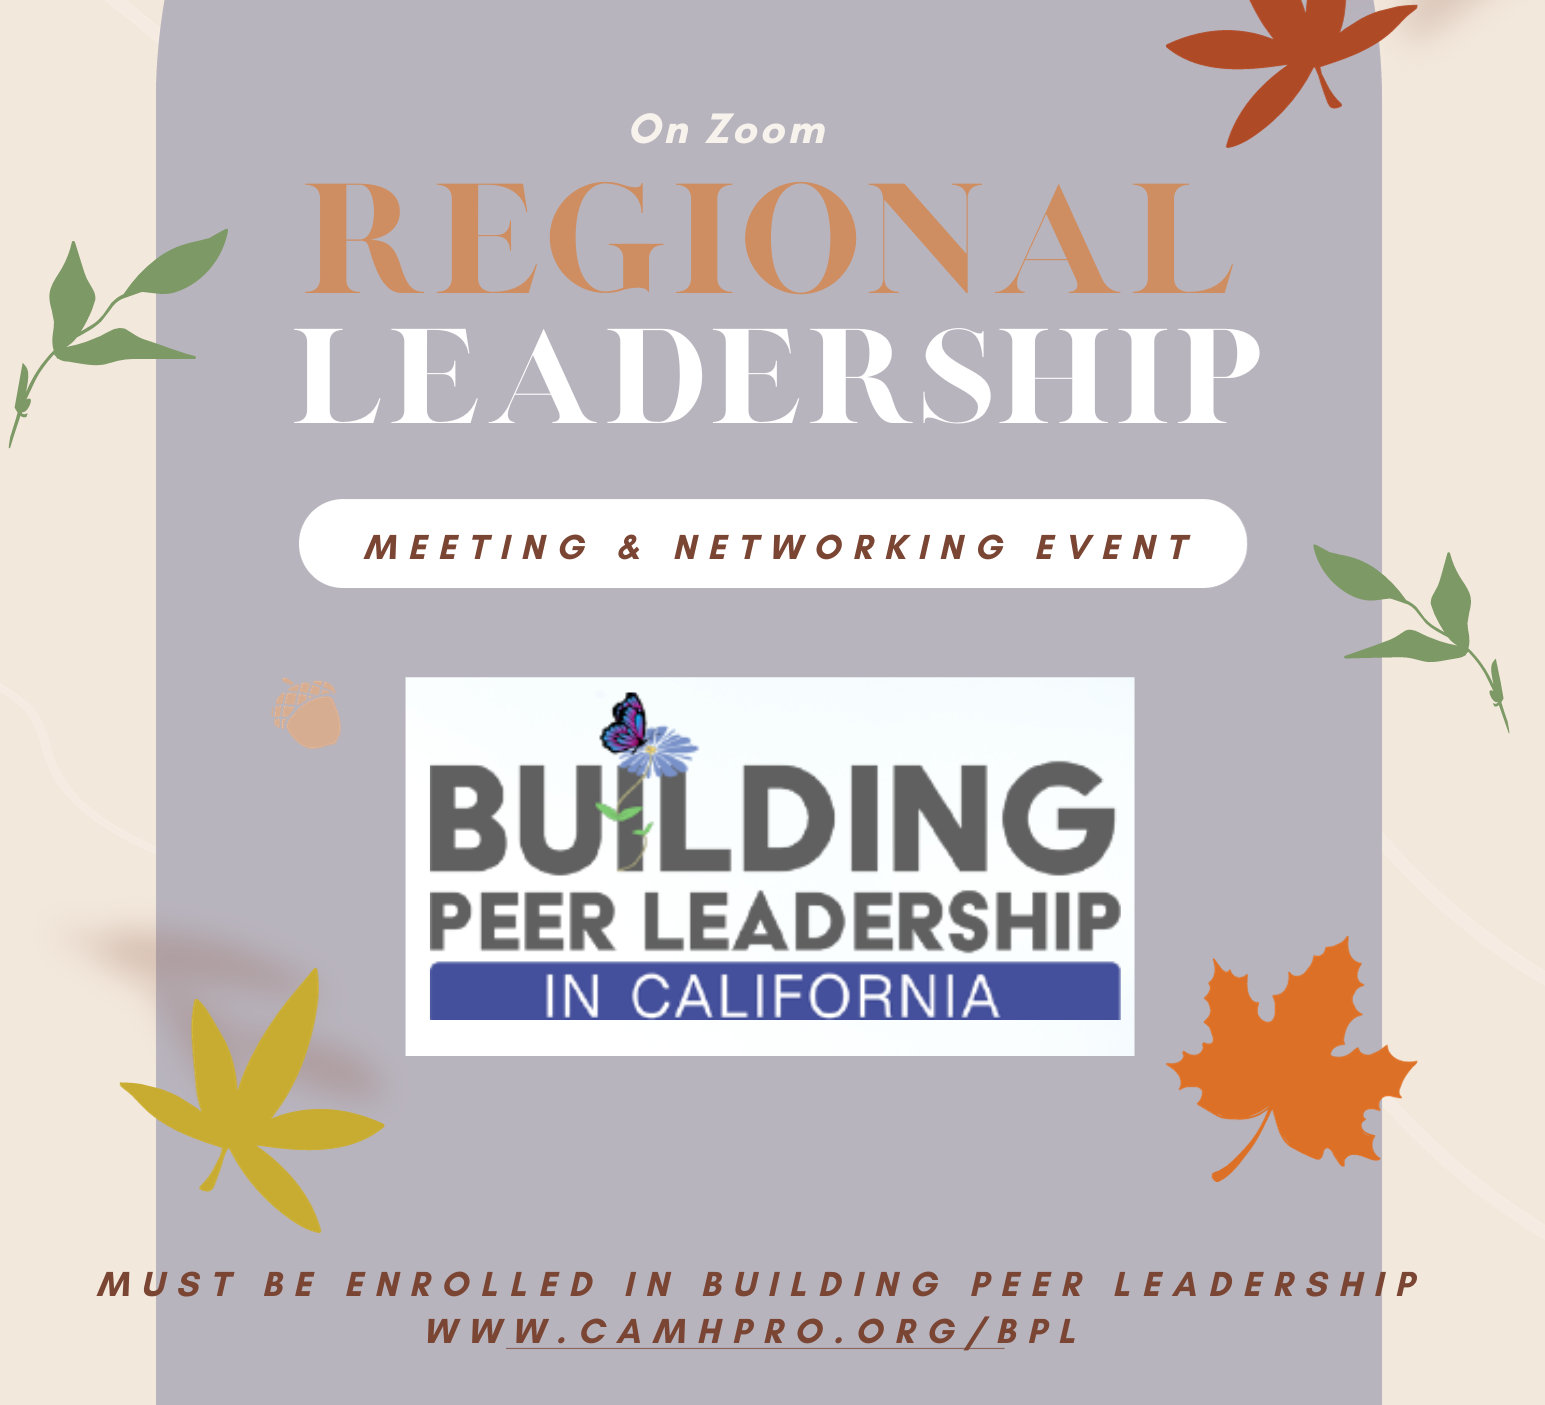 Regional Peer Leadership Meetings